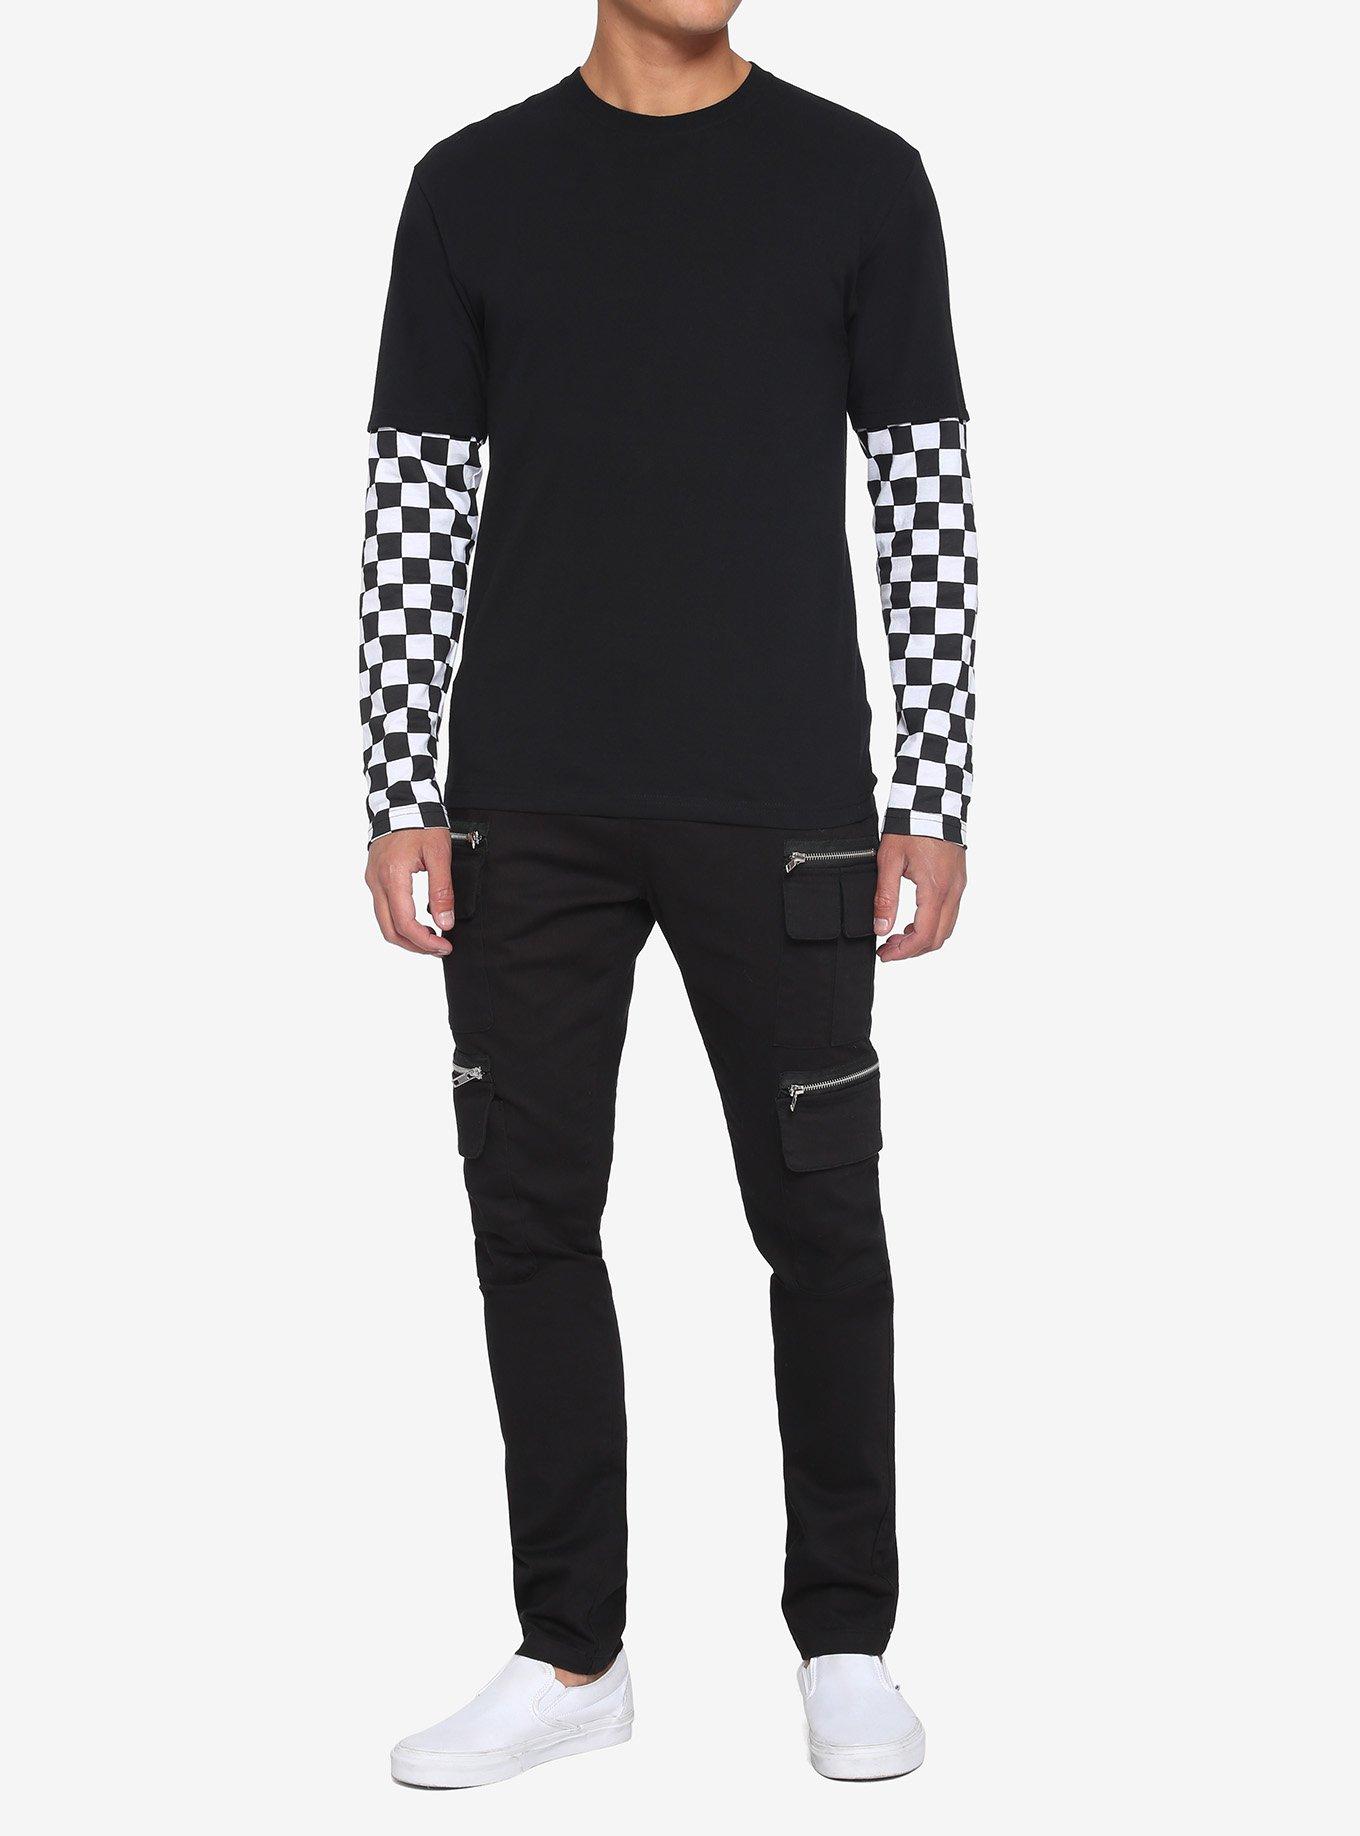 Black & White Checkered Sleeve Twofer Long-Sleeve T-Shirt